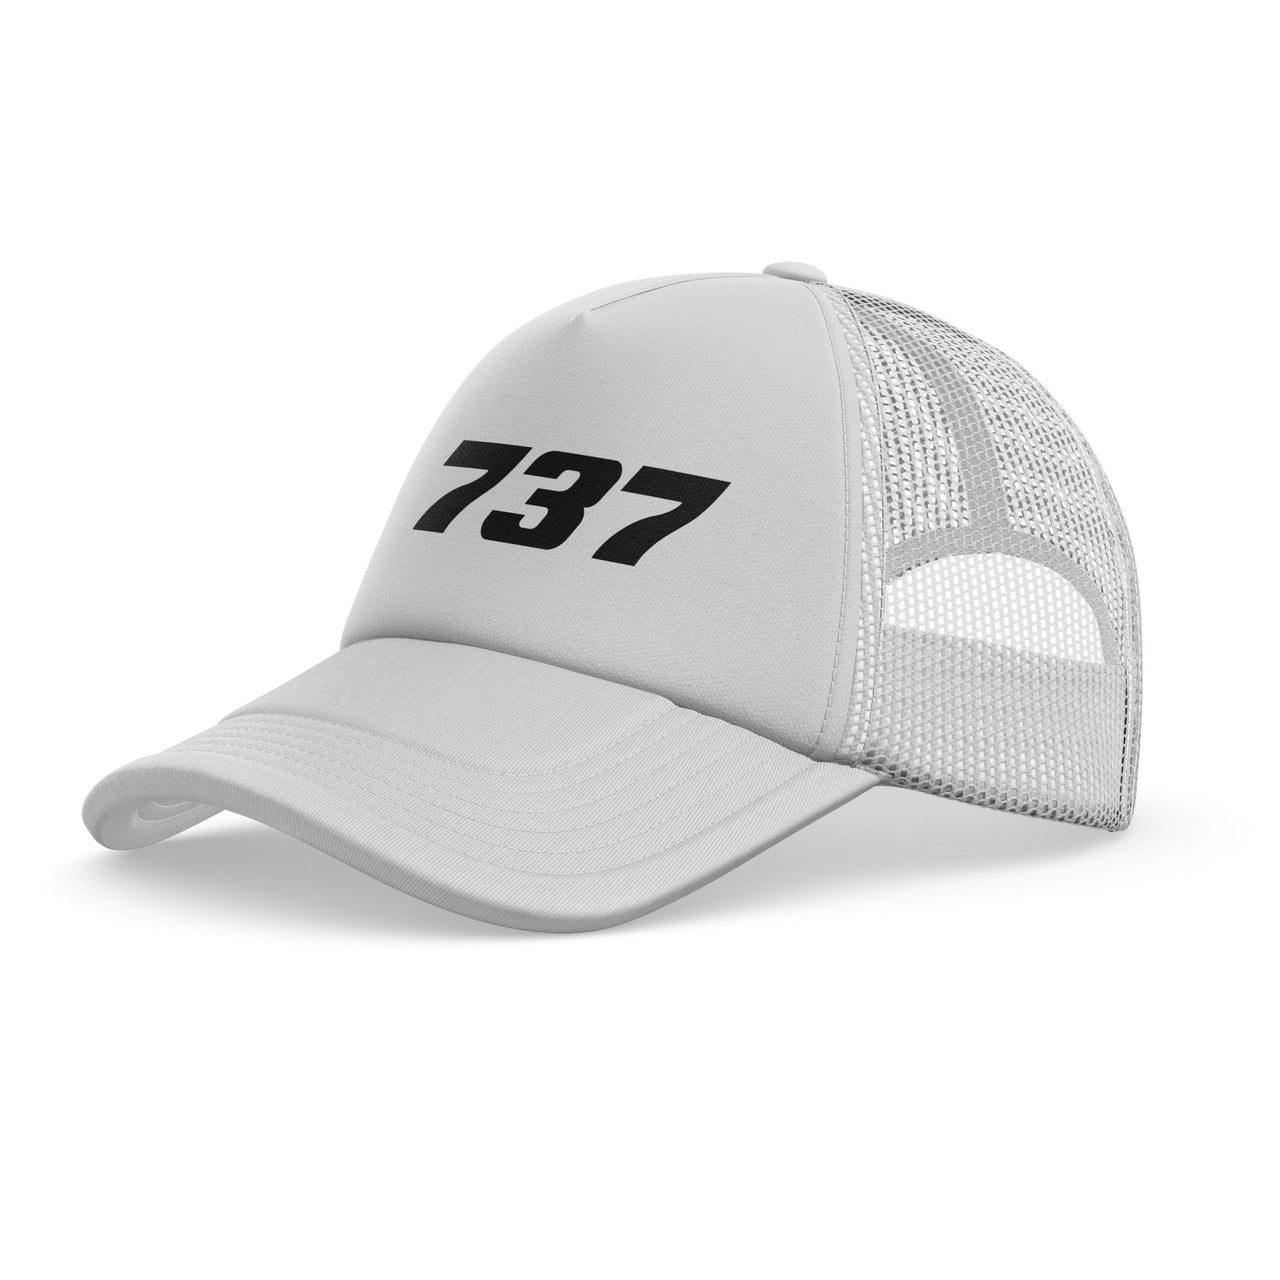 737 Flat Text Designed Trucker Caps & Hats